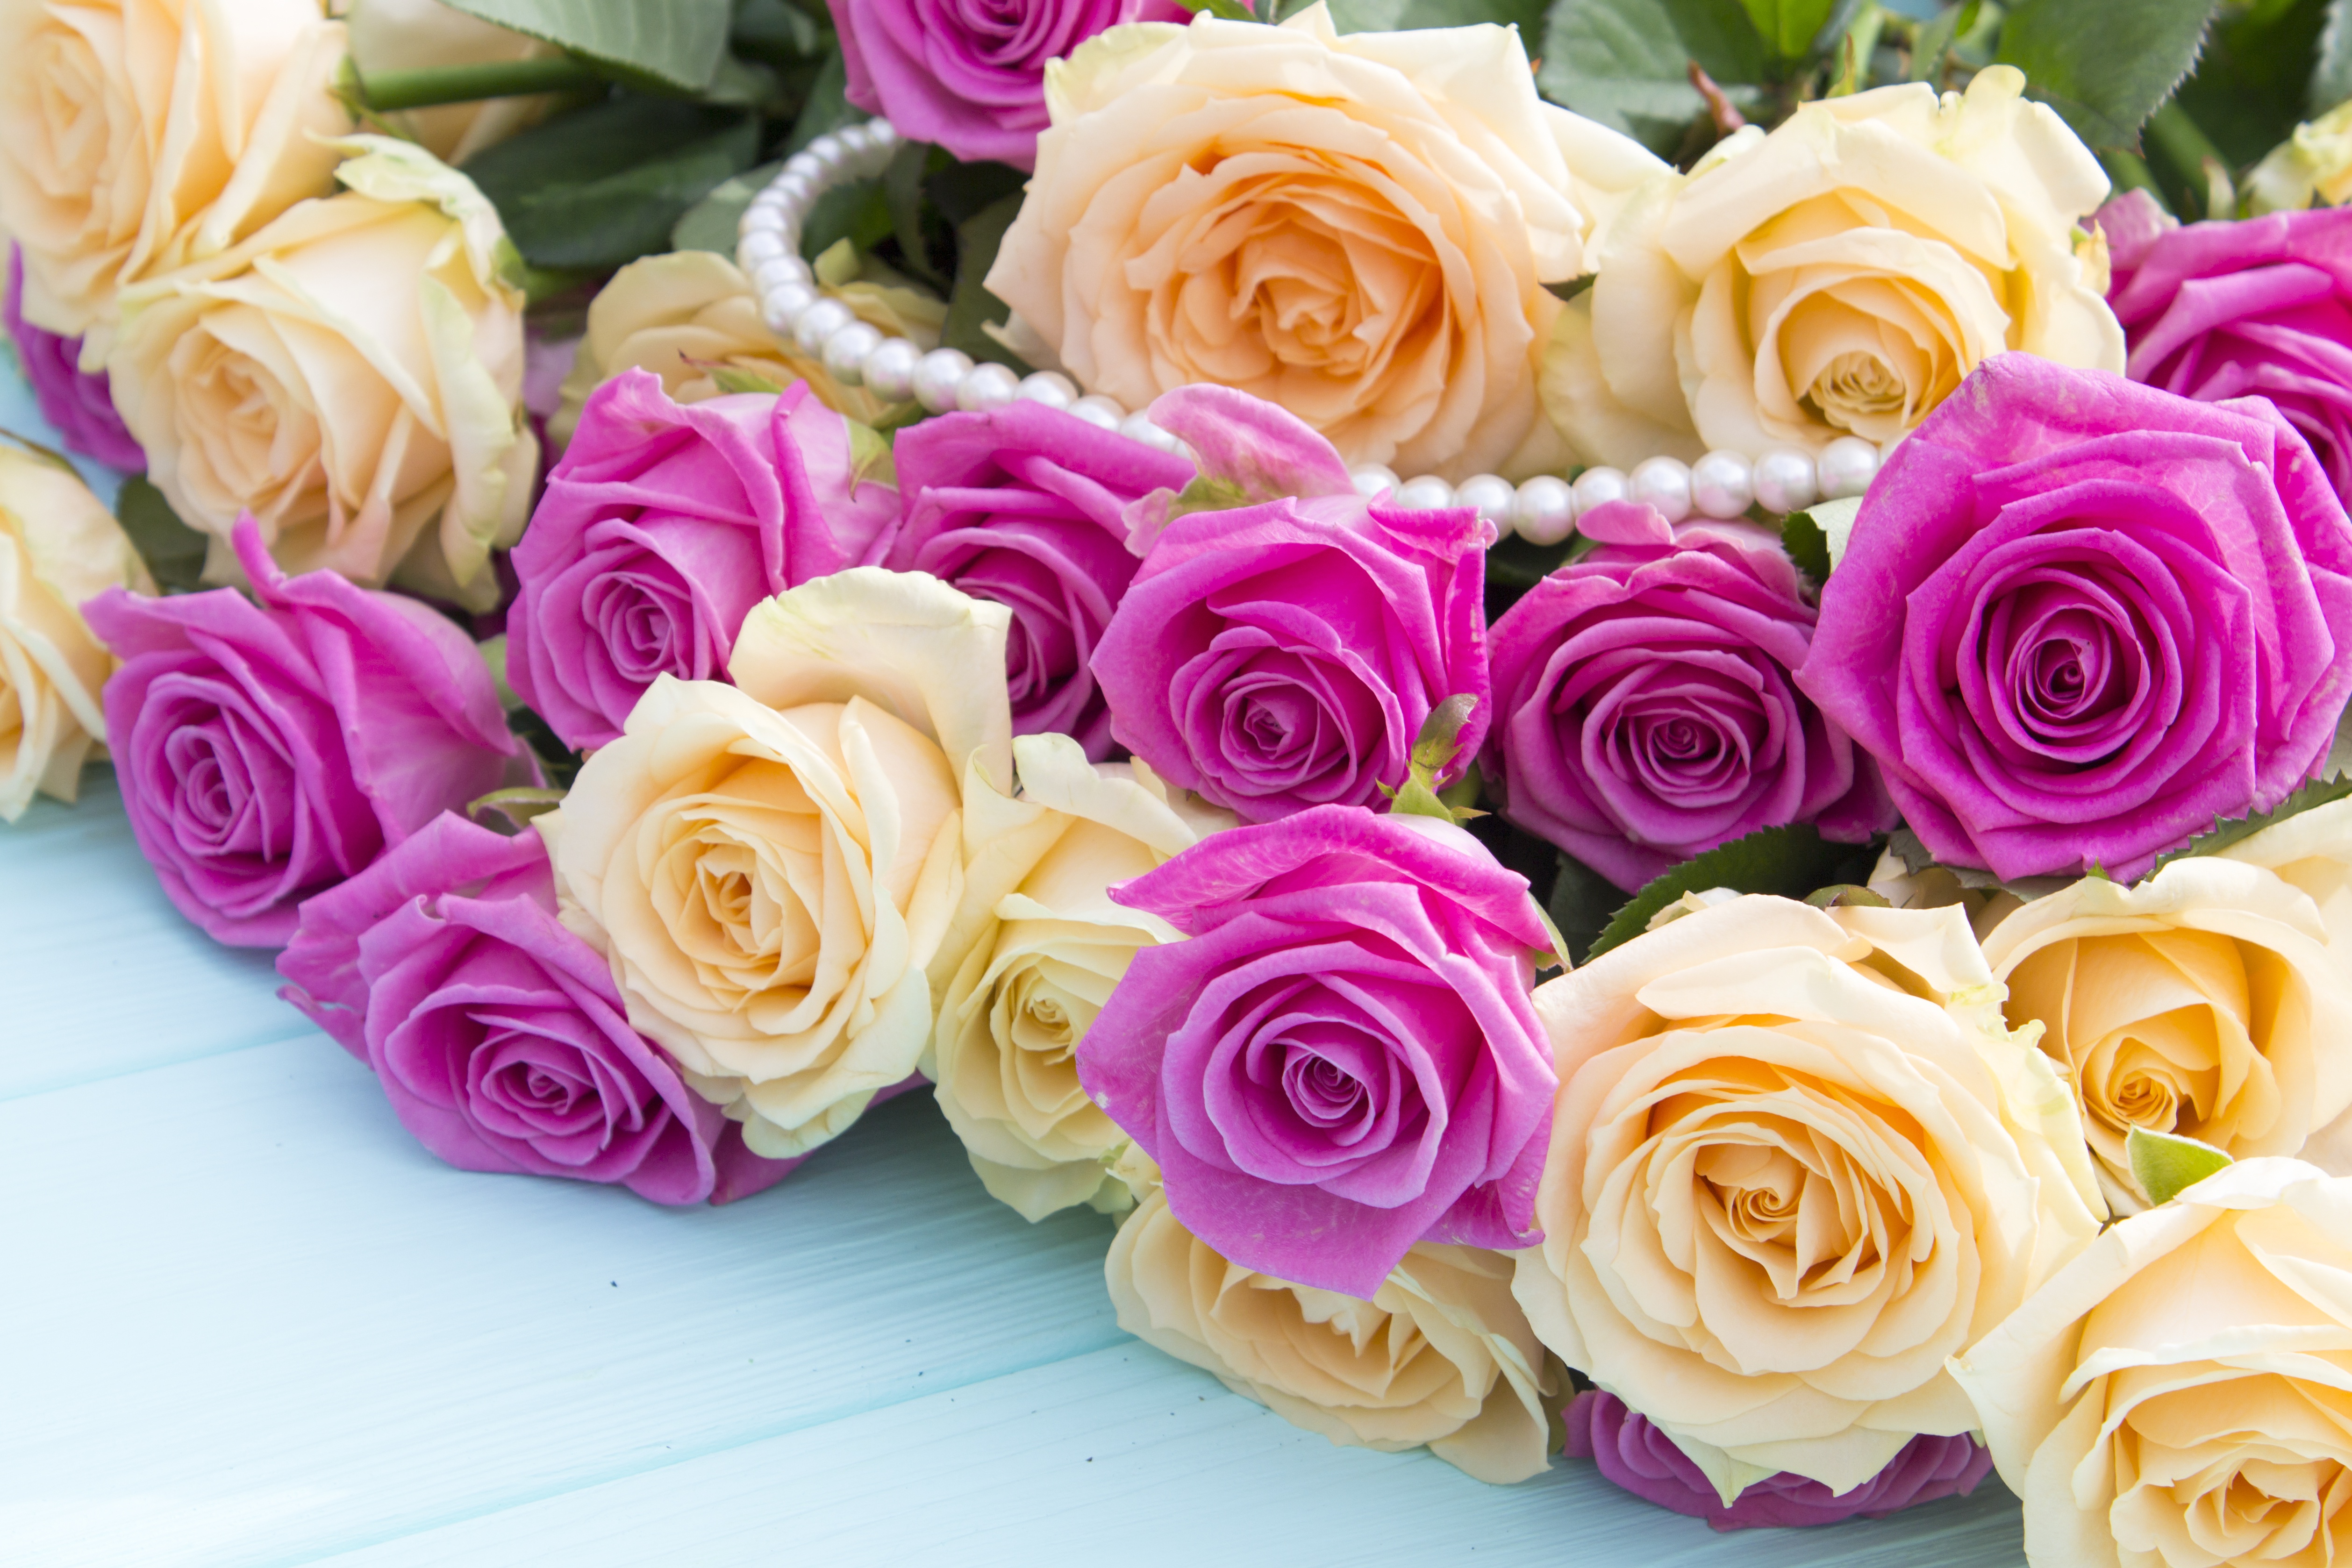 Много цветов на столе. Роскошные цветы. Цветы букеты шикарные. Красивые цветочки. Красивый букет роз.